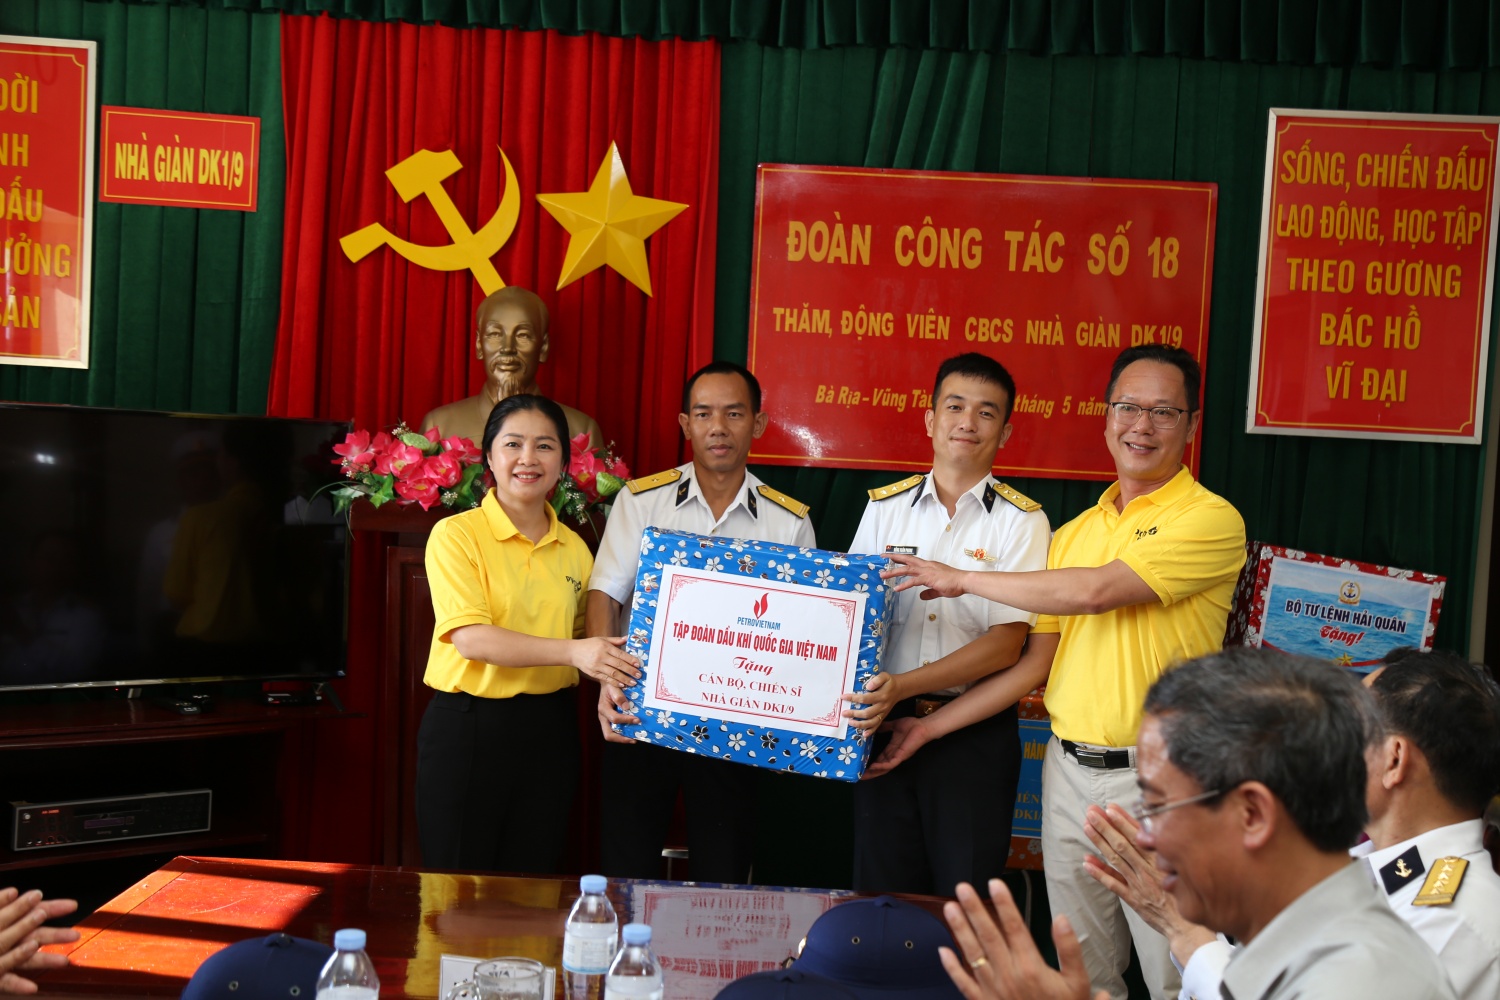 Tập đoàn Dầu khí Việt Nam thăm, động viên cán bộ chiến sĩ, người dân  tại huyện đảo Trường Sa và Nhà giàn DK1/9 – Ba Kè